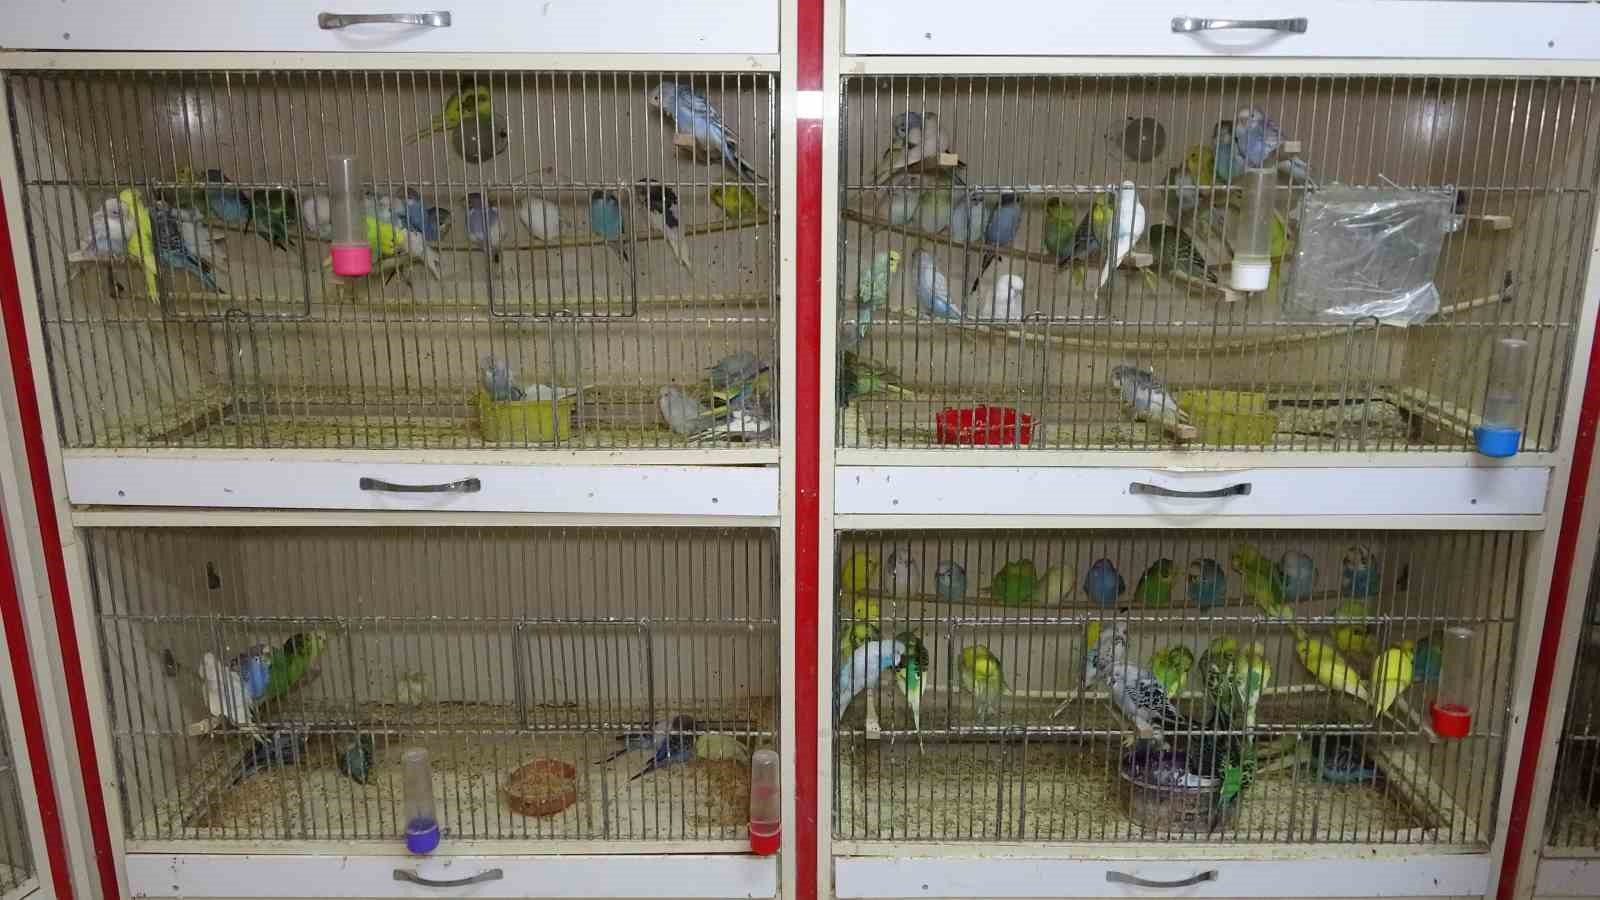 ‘Deprem kuşu’ diye almaya başladılar: Ötücü kuşlara ilgi arttı